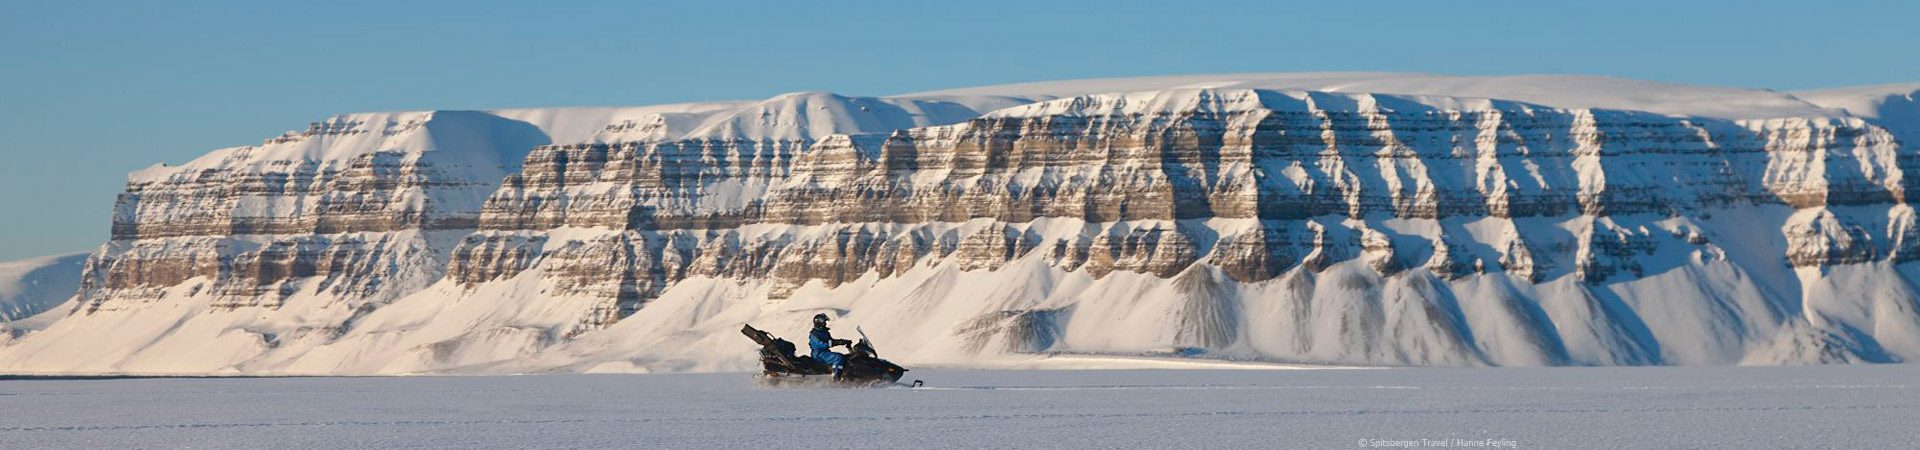 viaje a spitsbergen svalbard longyearbyen moto de nieve motonieve